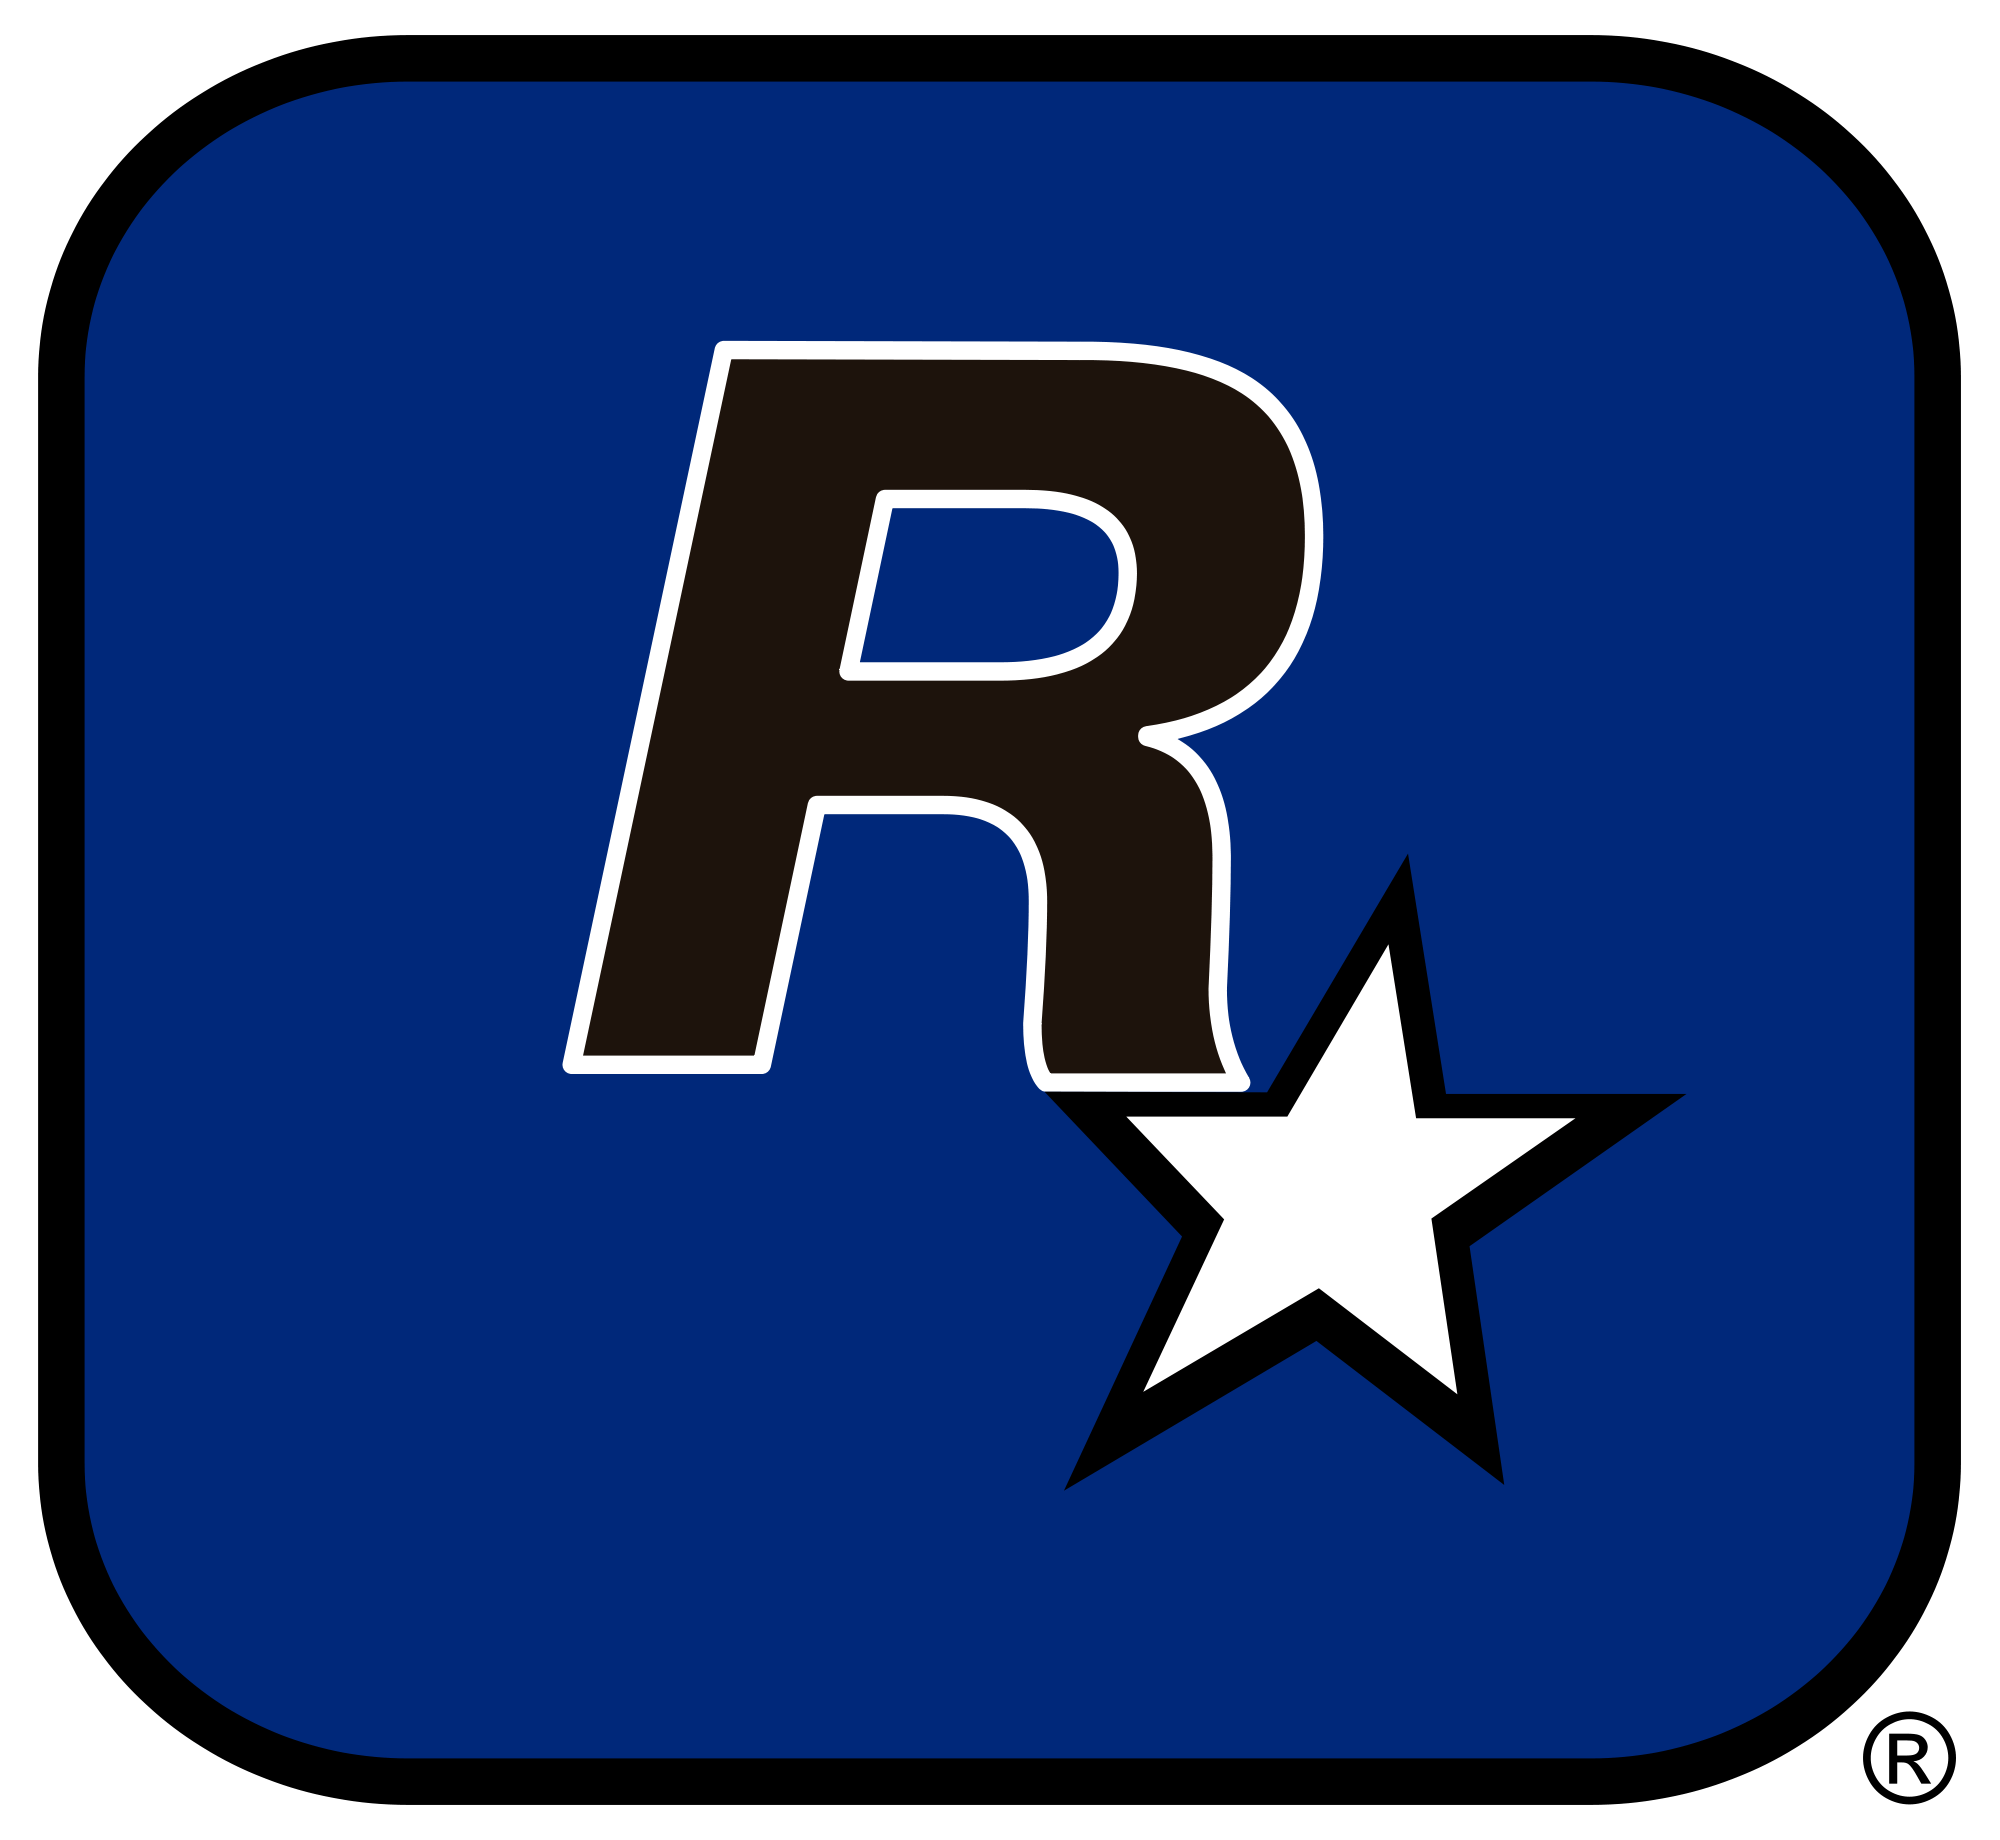 Rockstar Games logo, logotype